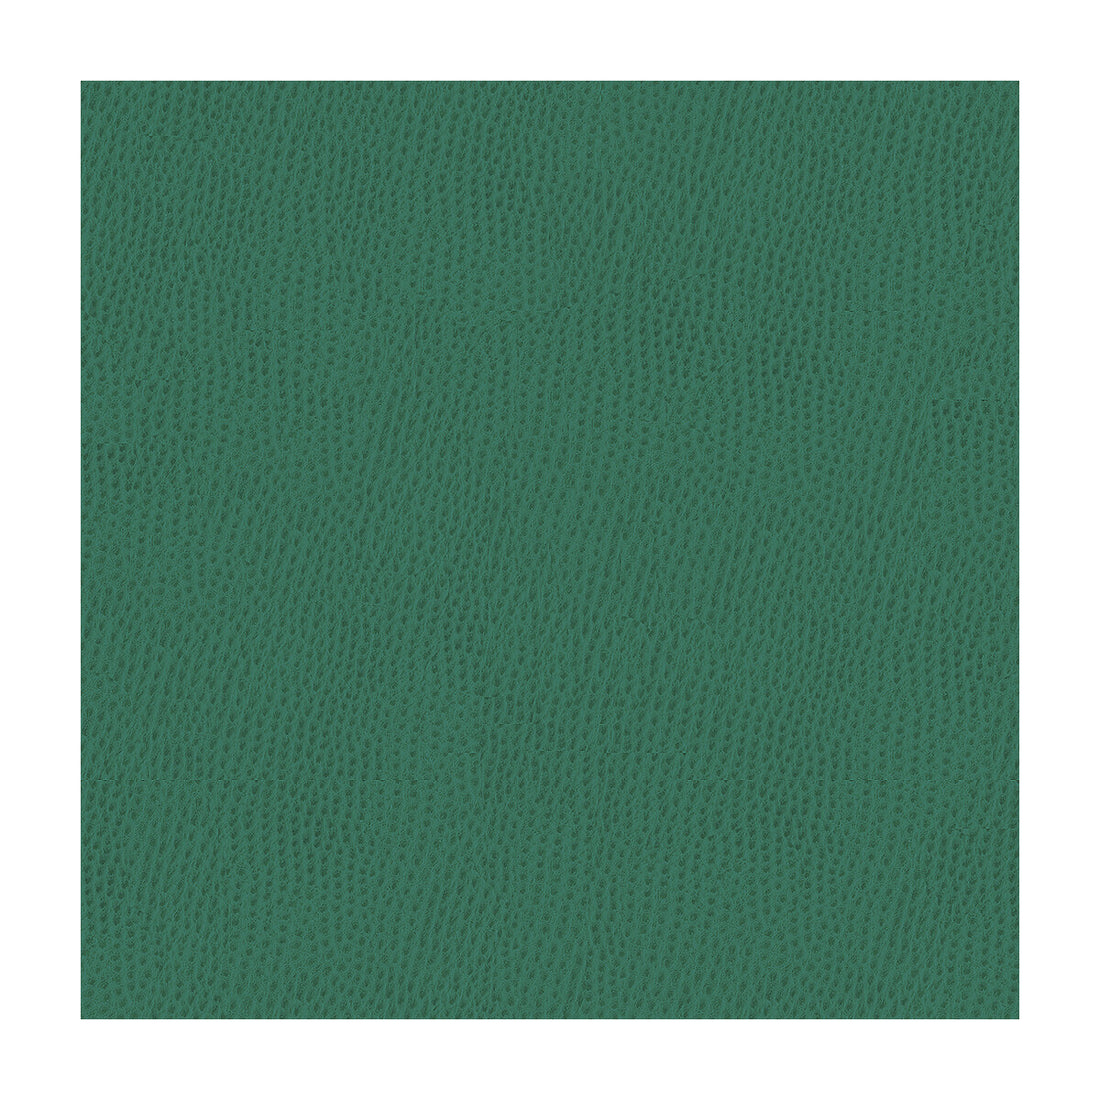 Kravet Smart fabric in ossy-35 color - pattern OSSY.35.0 - by Kravet Smart